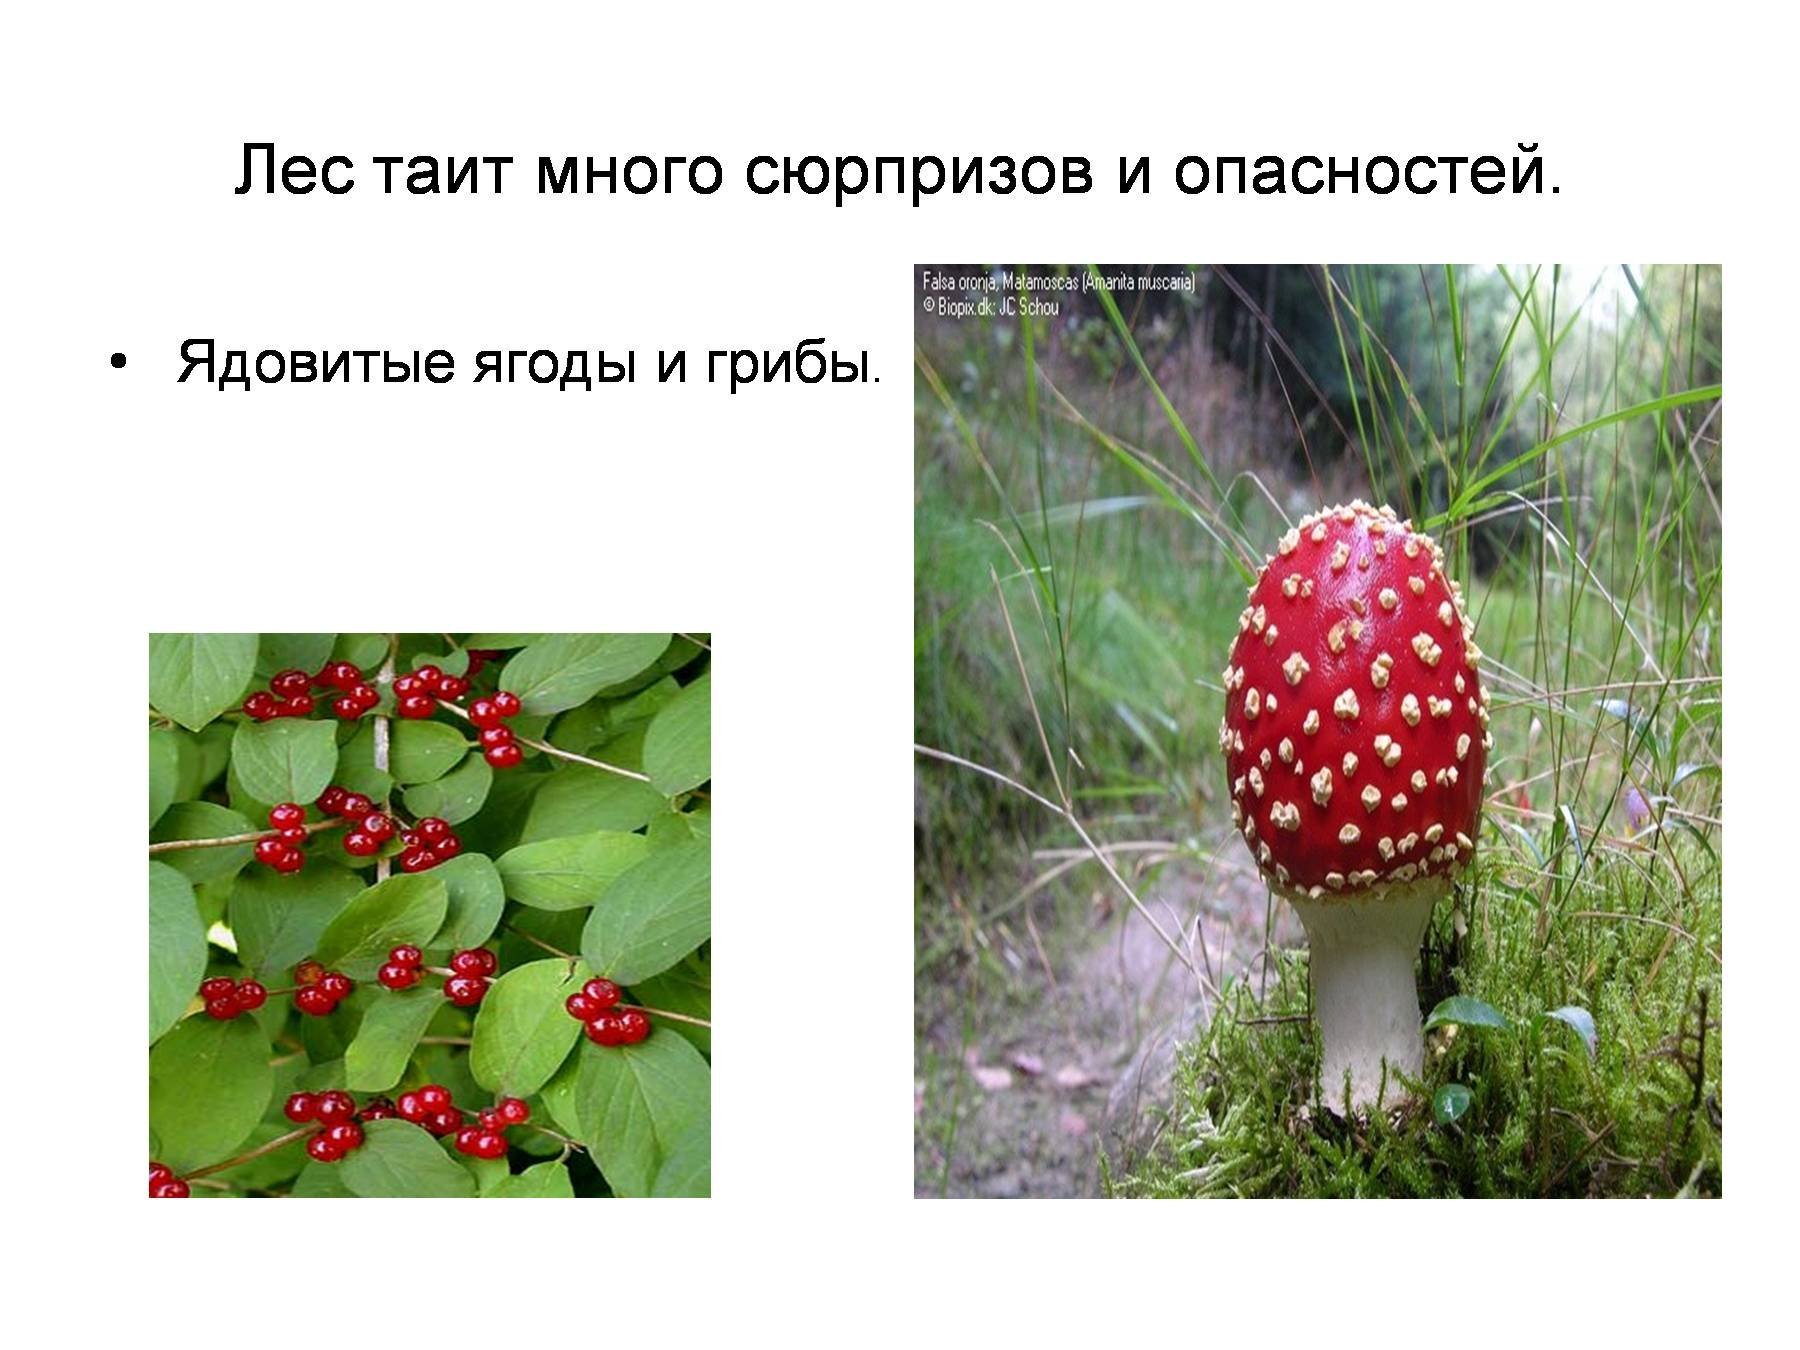 Несъедобные лесные грибы 2. Ядовитые грибы и ягоды. Ядовитые Лесные ягоды. Несъедобные Лесные ягоды и грибы. Не сьедобные Лесные ягоды.